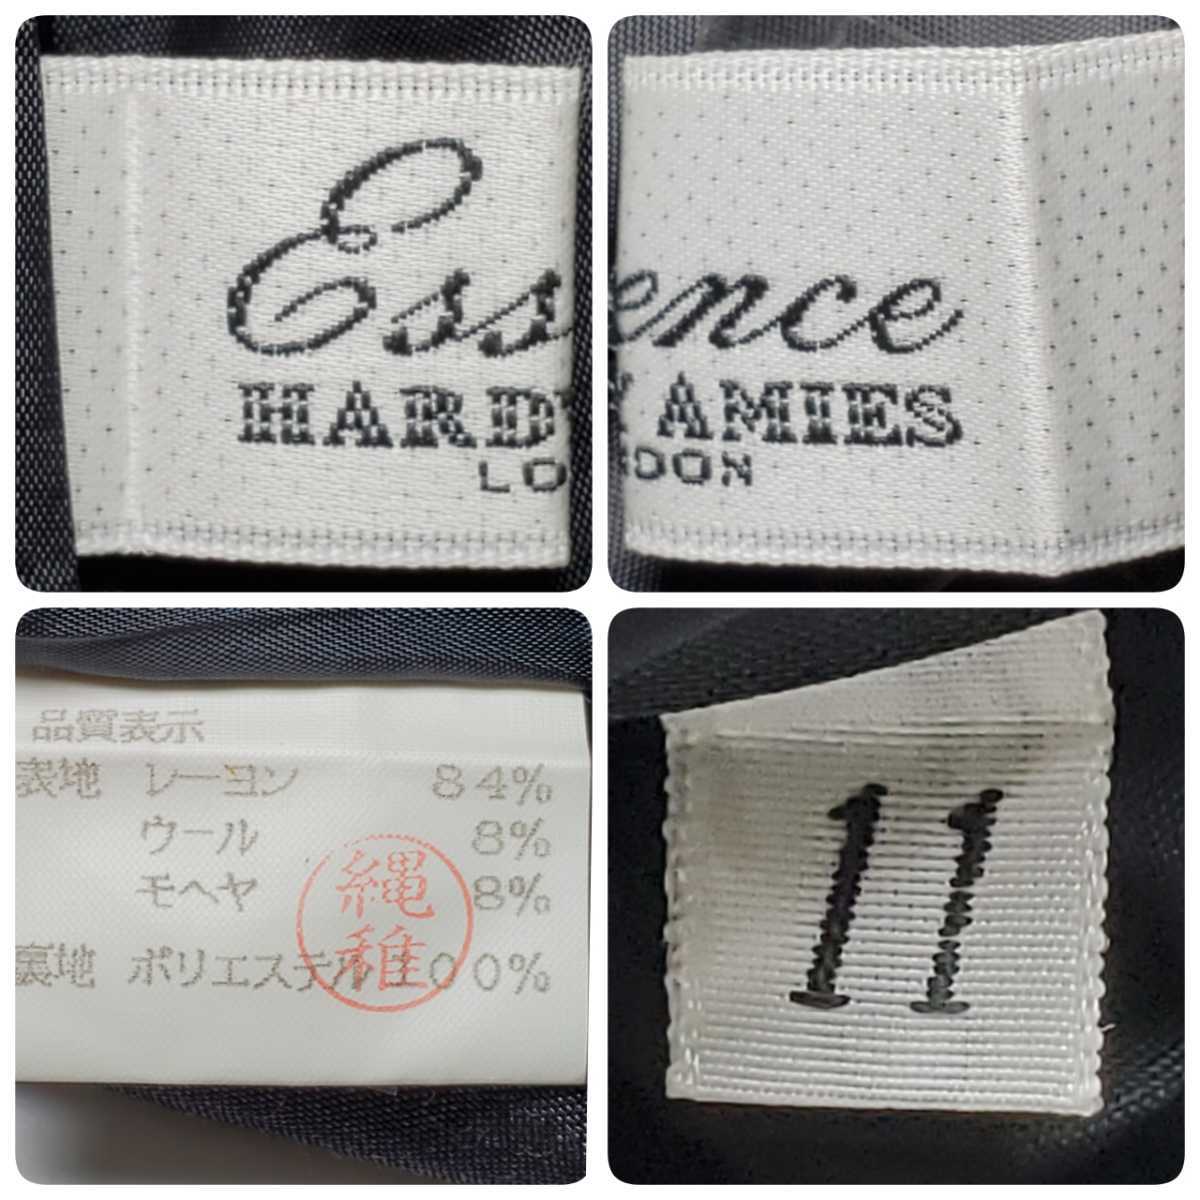 Essence HARDY AMIES Hardy Amies черный длинная юбка размер 11( примерно M размер соответствует )